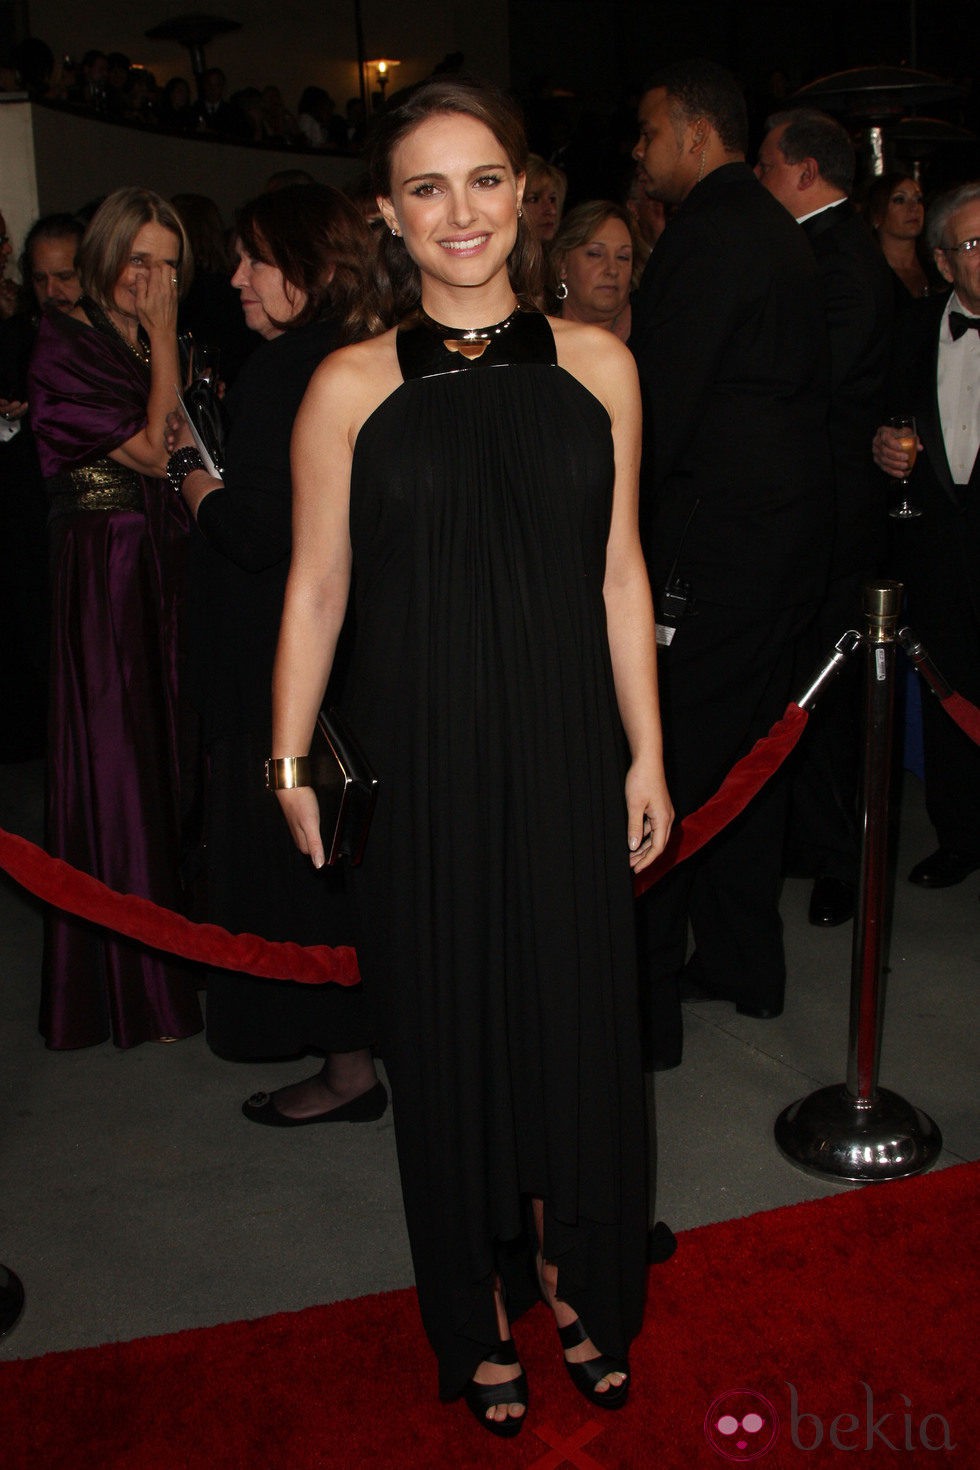 Natalie Portman con un 'clutch' negro en los Premios del Sindicato de Directores 2011